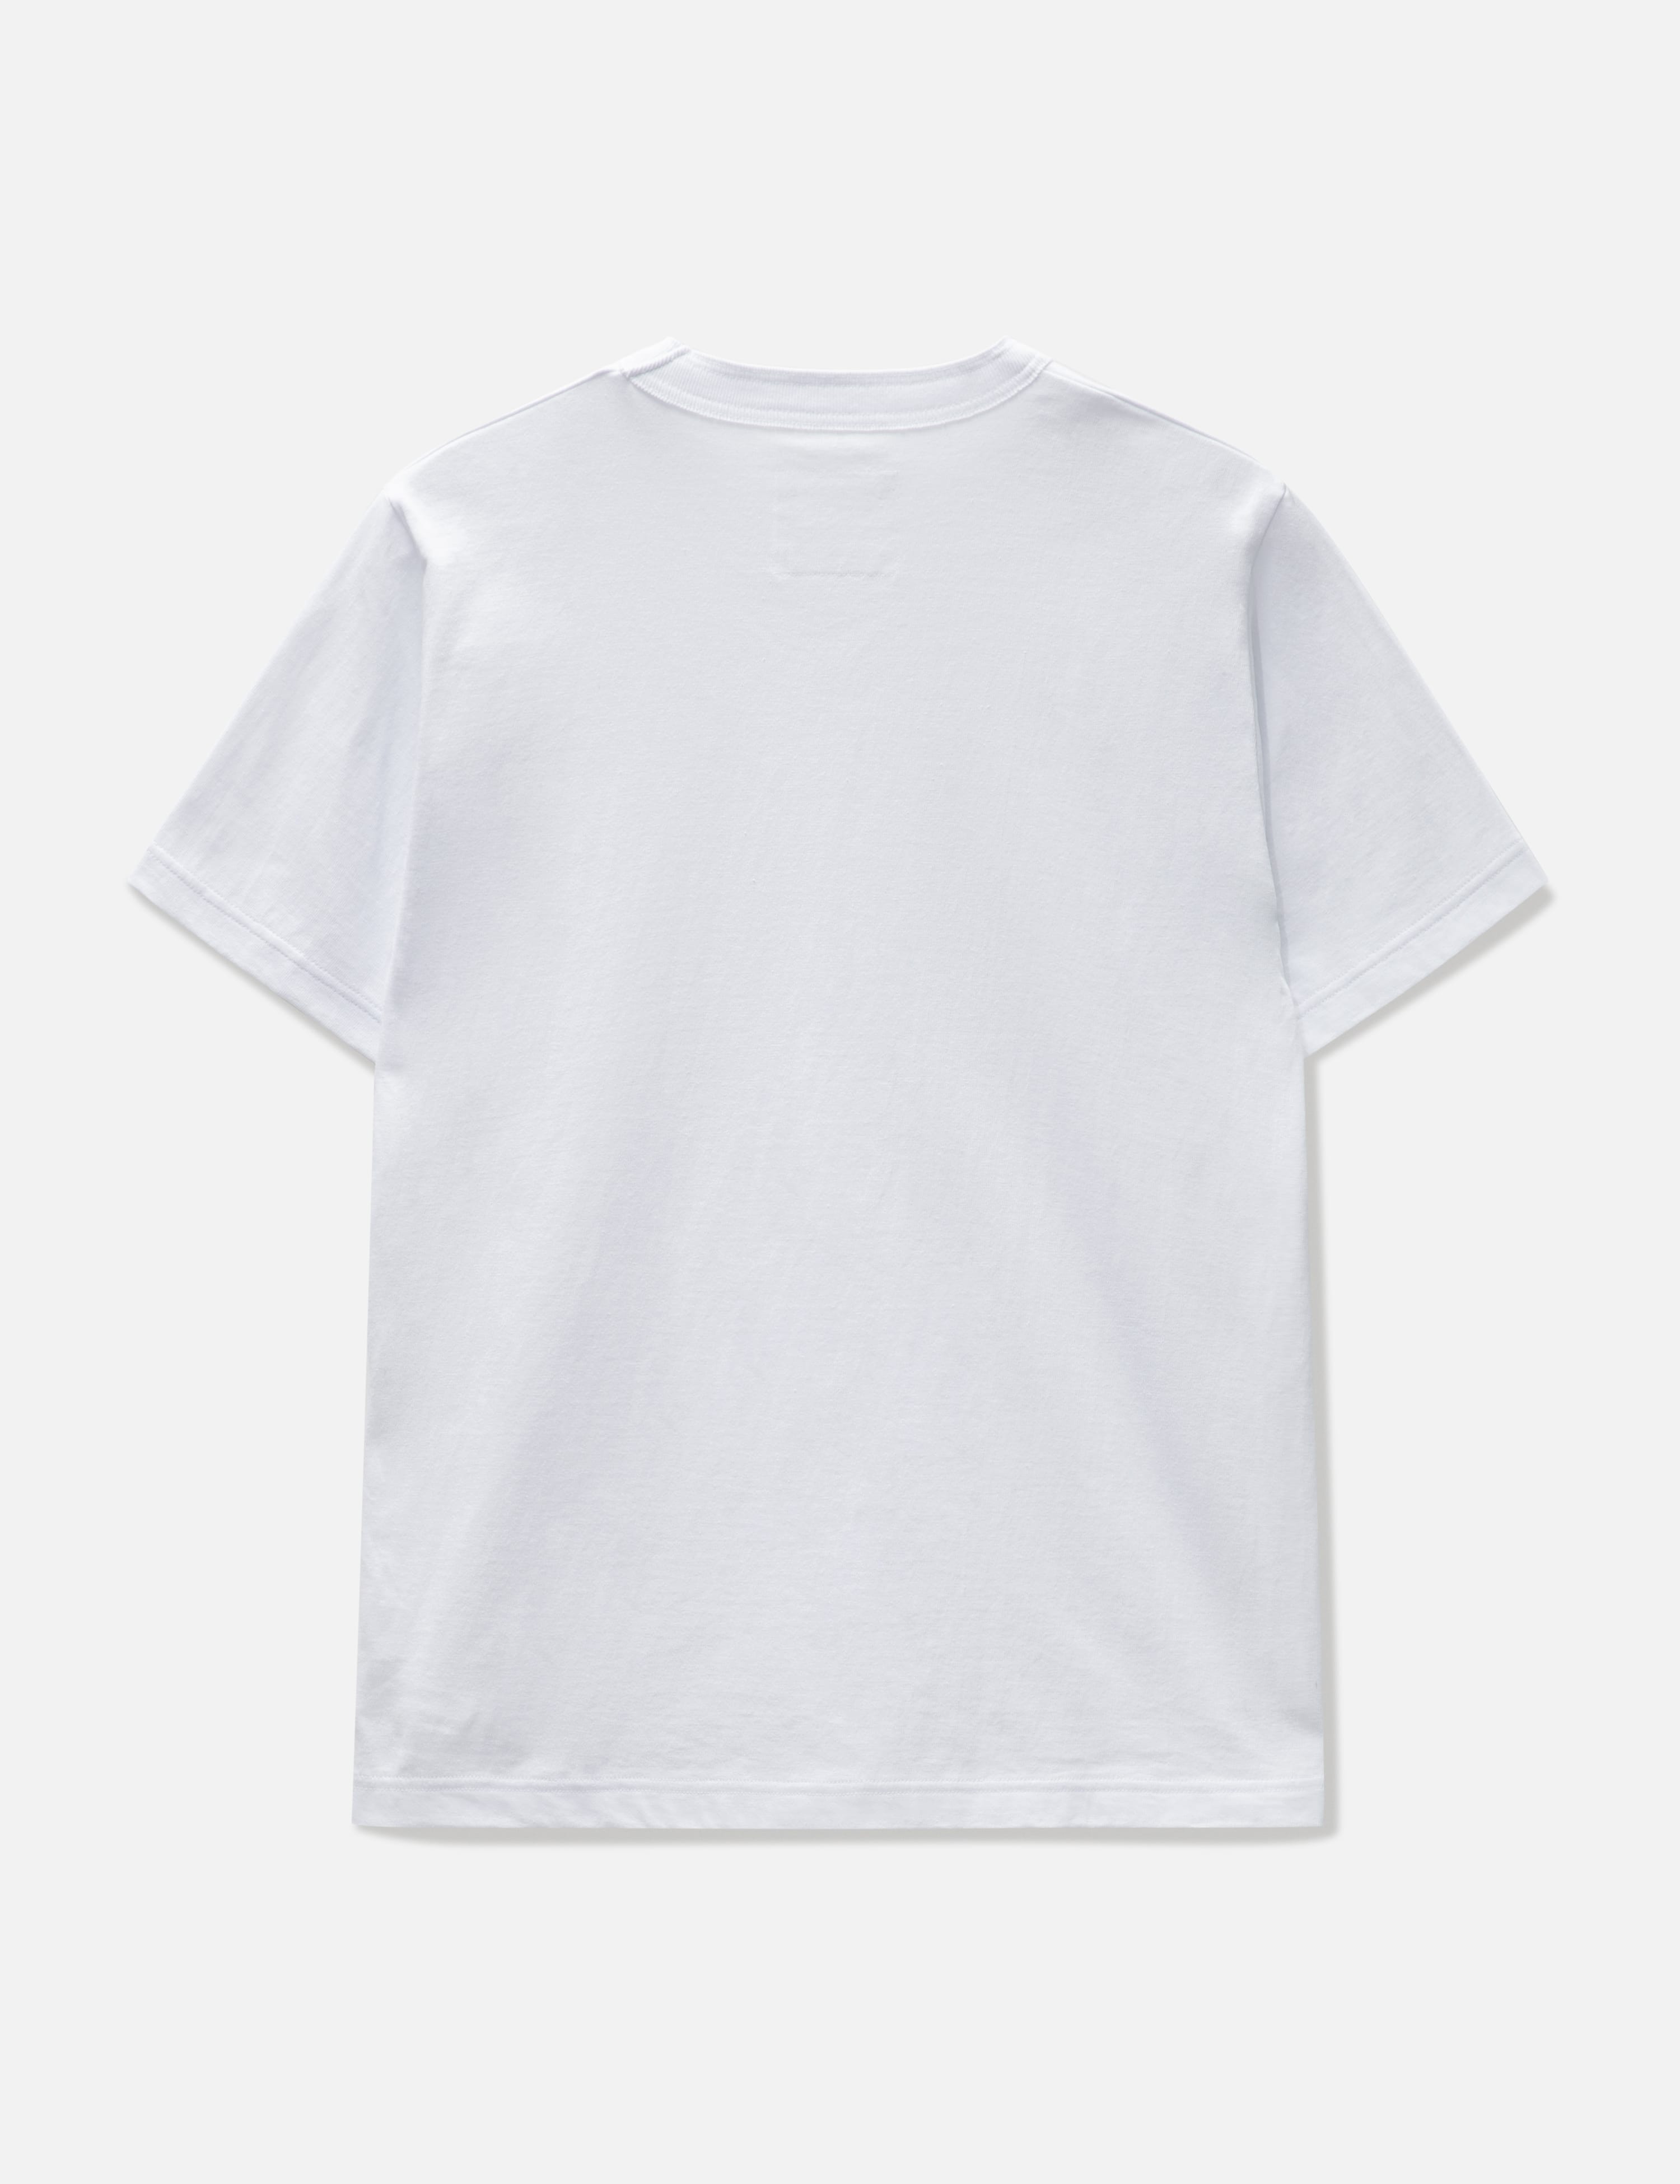 白1 sacai Carhartt WIP T-shirt tシャツ 新品 - Tシャツ/カットソー